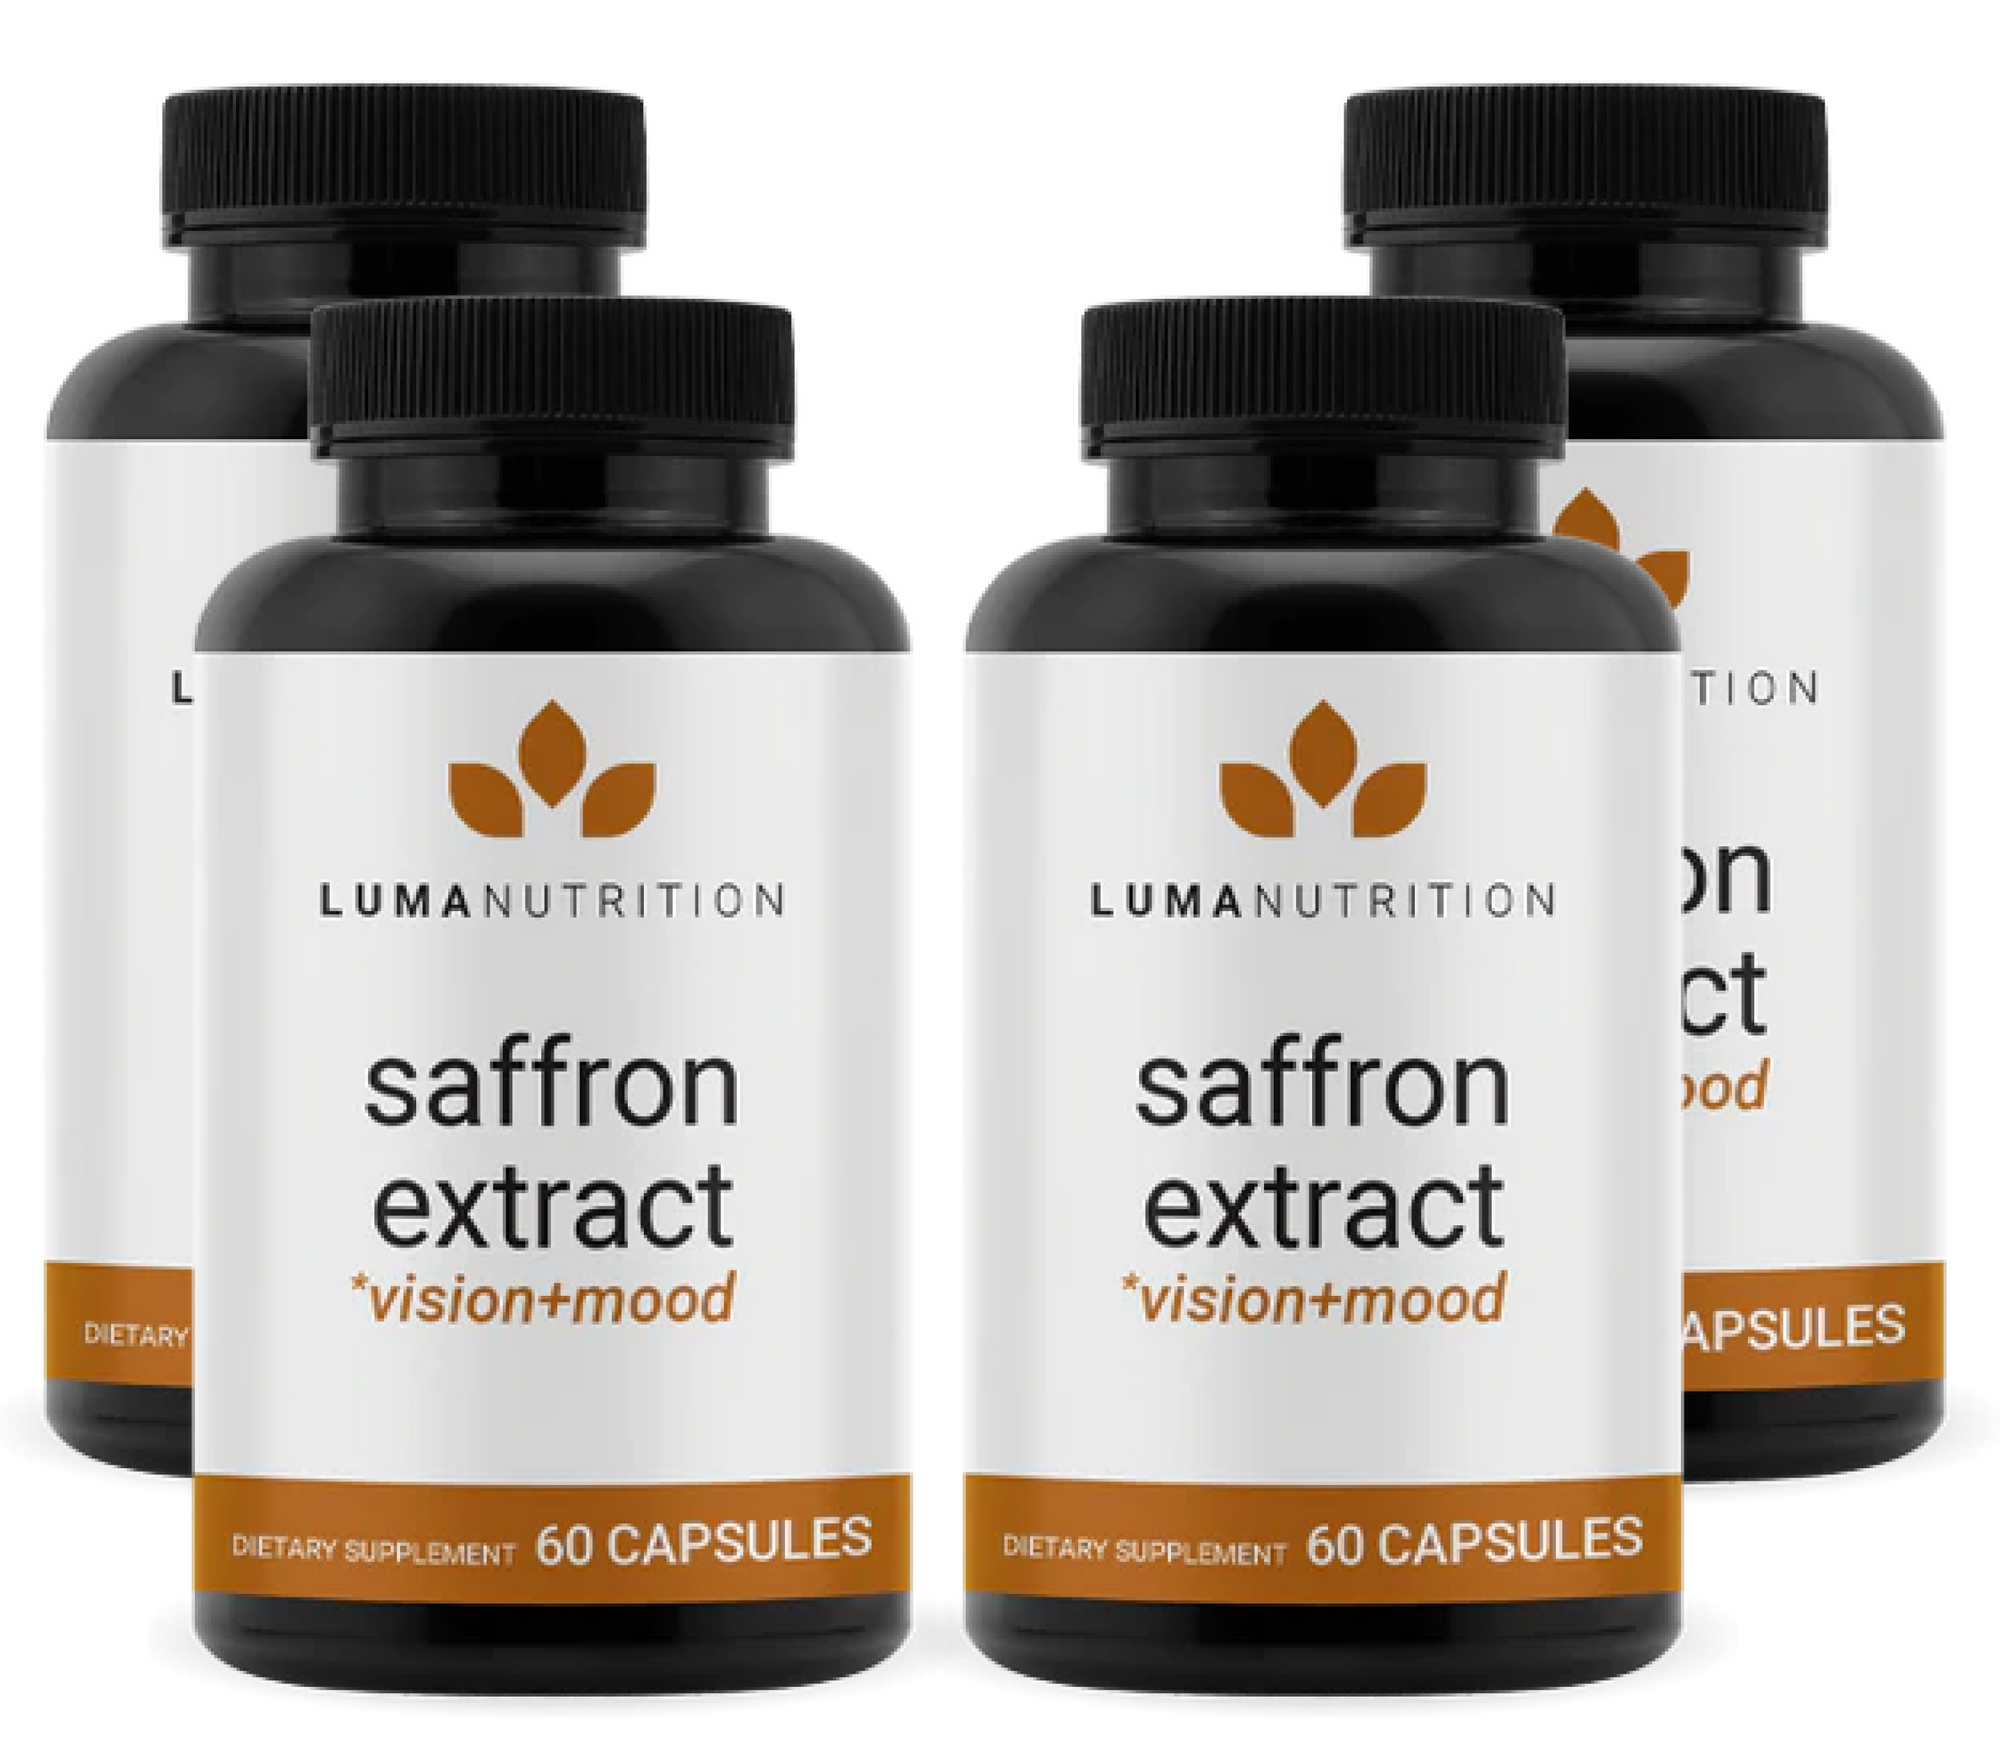 Saffron Extract - 4 Bottle Discount